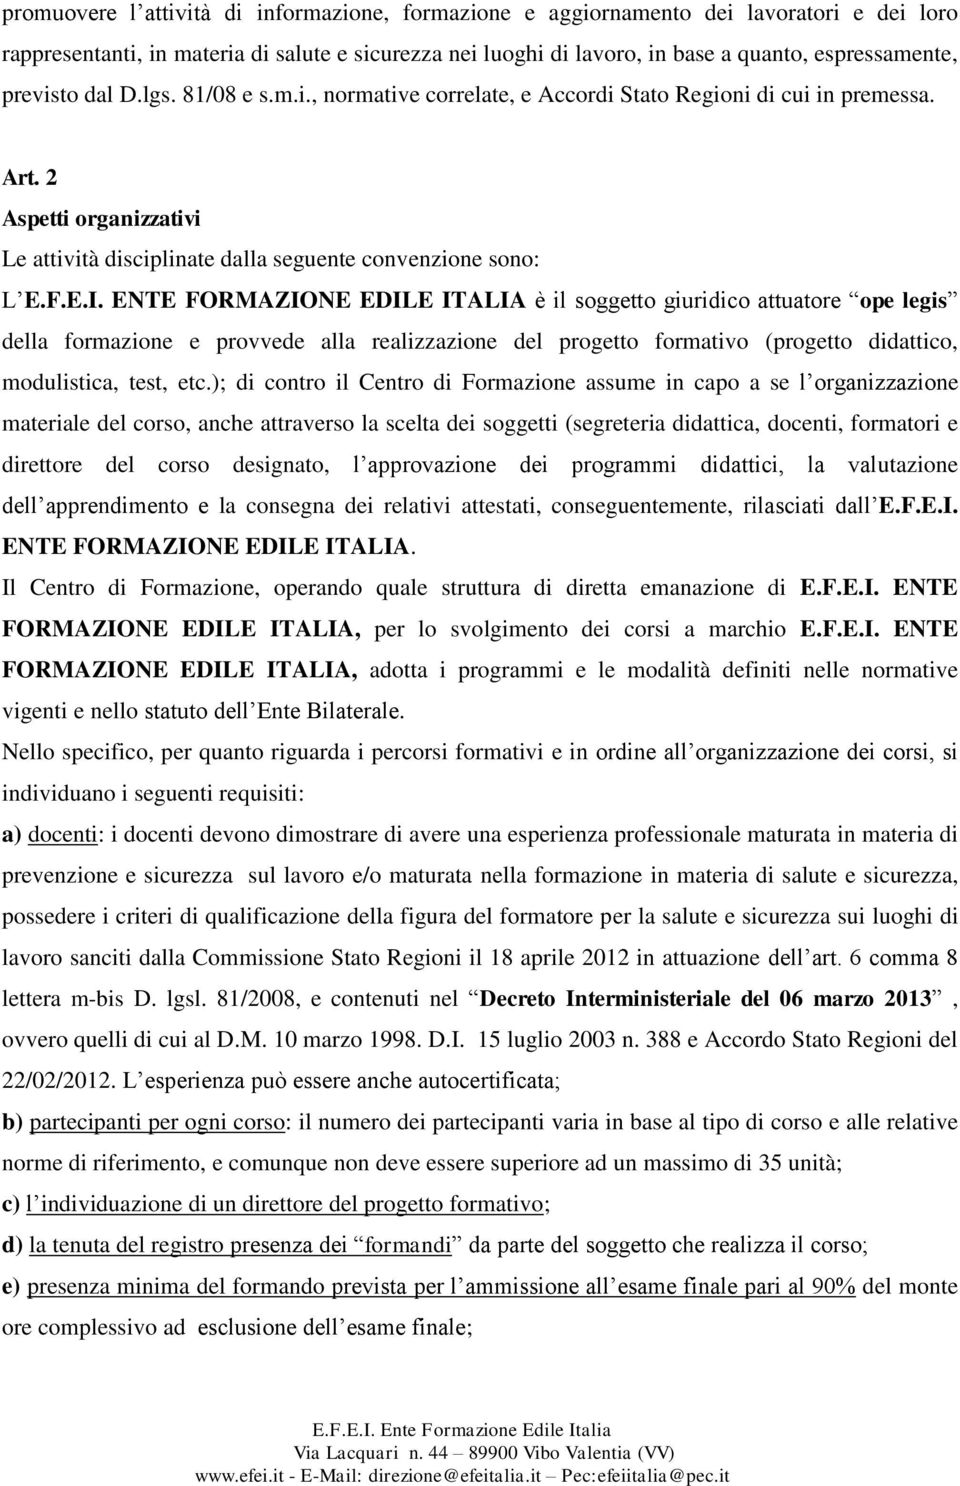 ENTE FORMAZIONE EDILE ITALIA è il soggetto giuridico attuatore ope legis della formazione e provvede alla realizzazione del progetto formativo (progetto didattico, modulistica, test, etc.